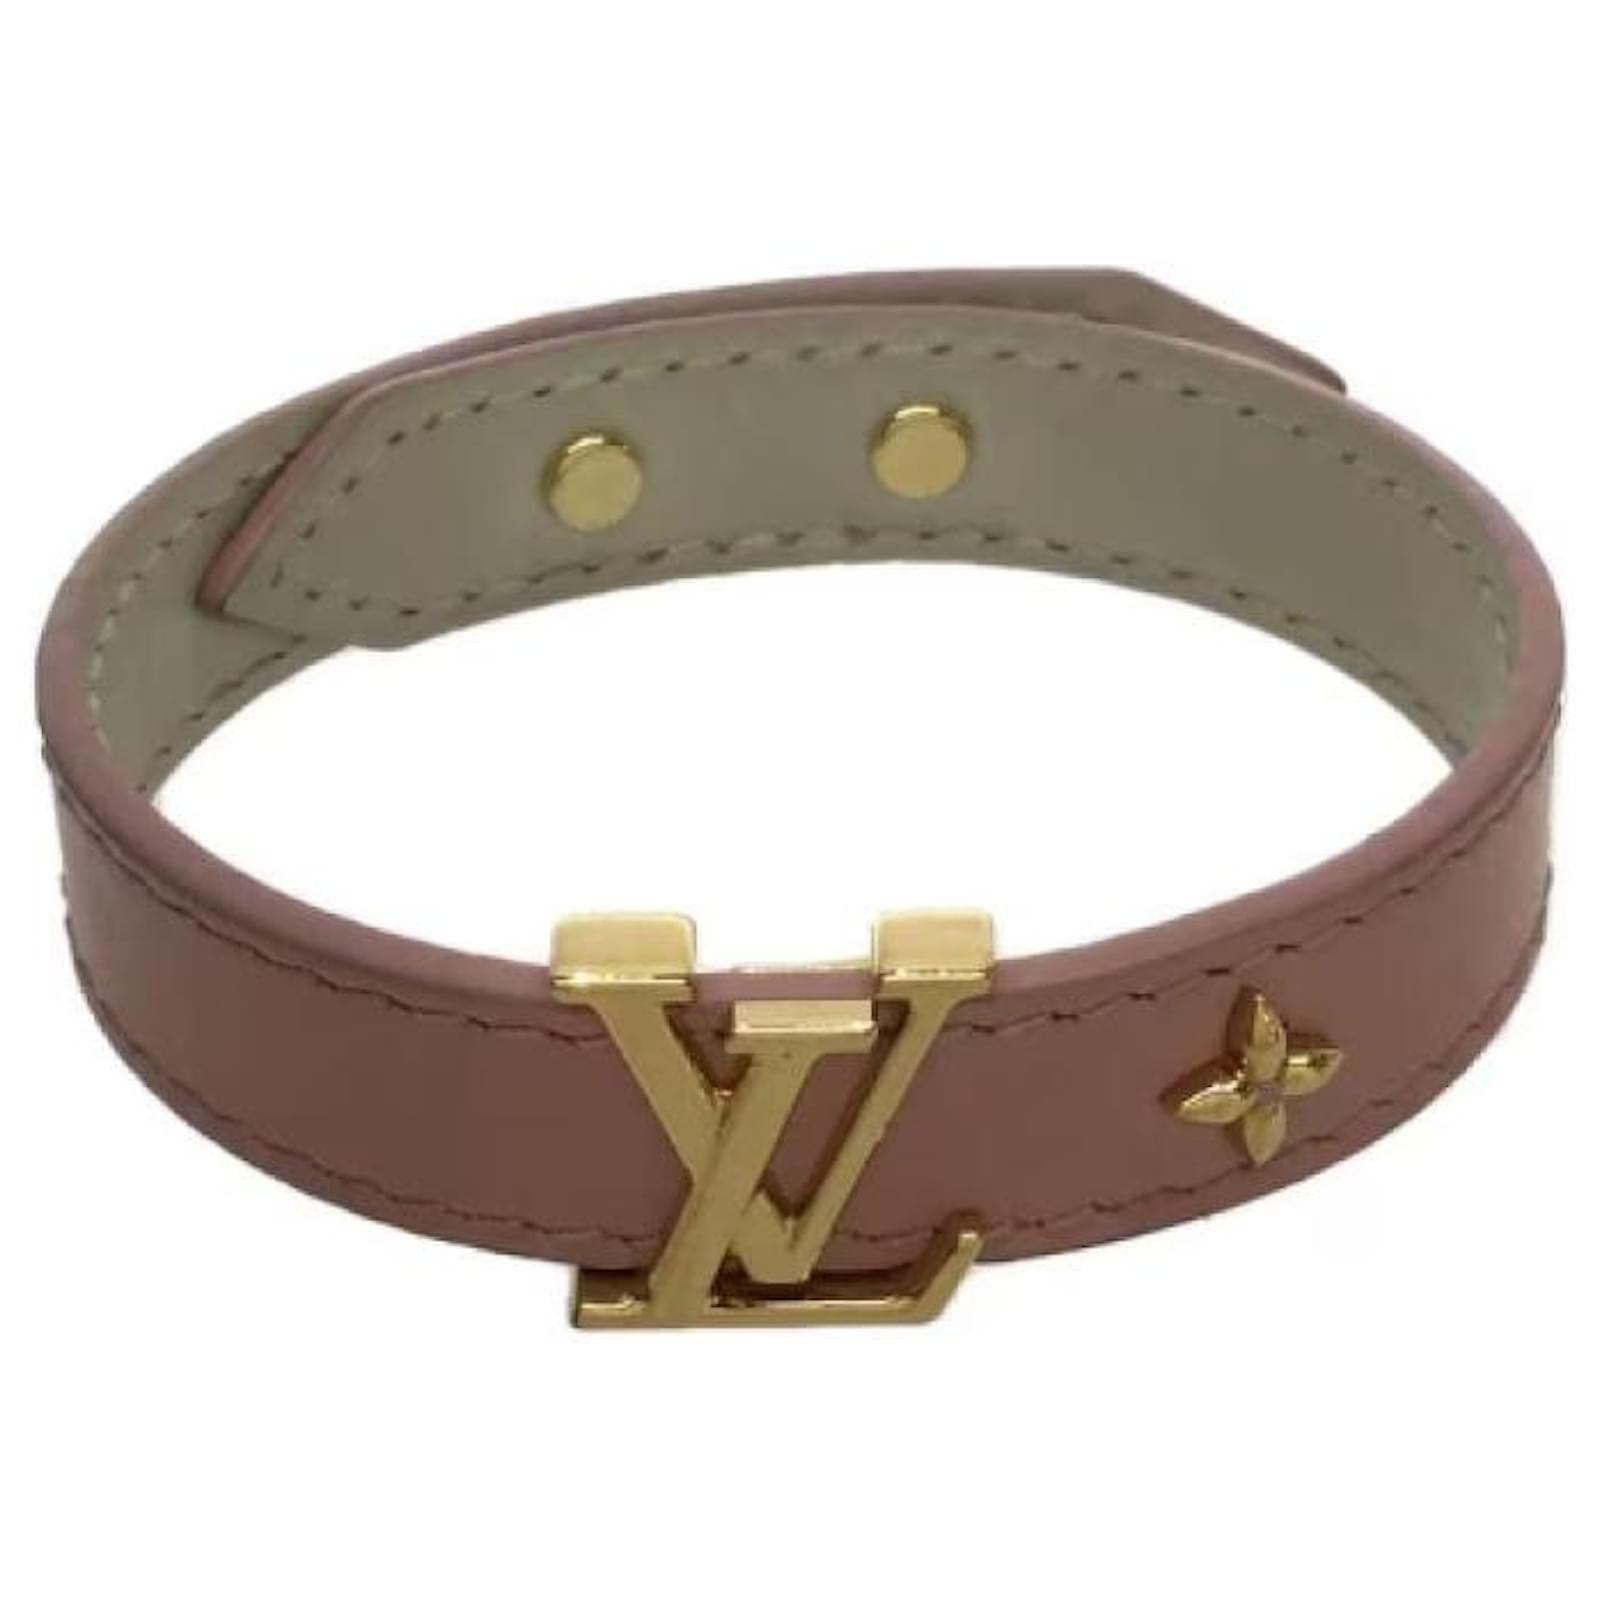 Louis Vuitton Nanogram Leather Bracelet